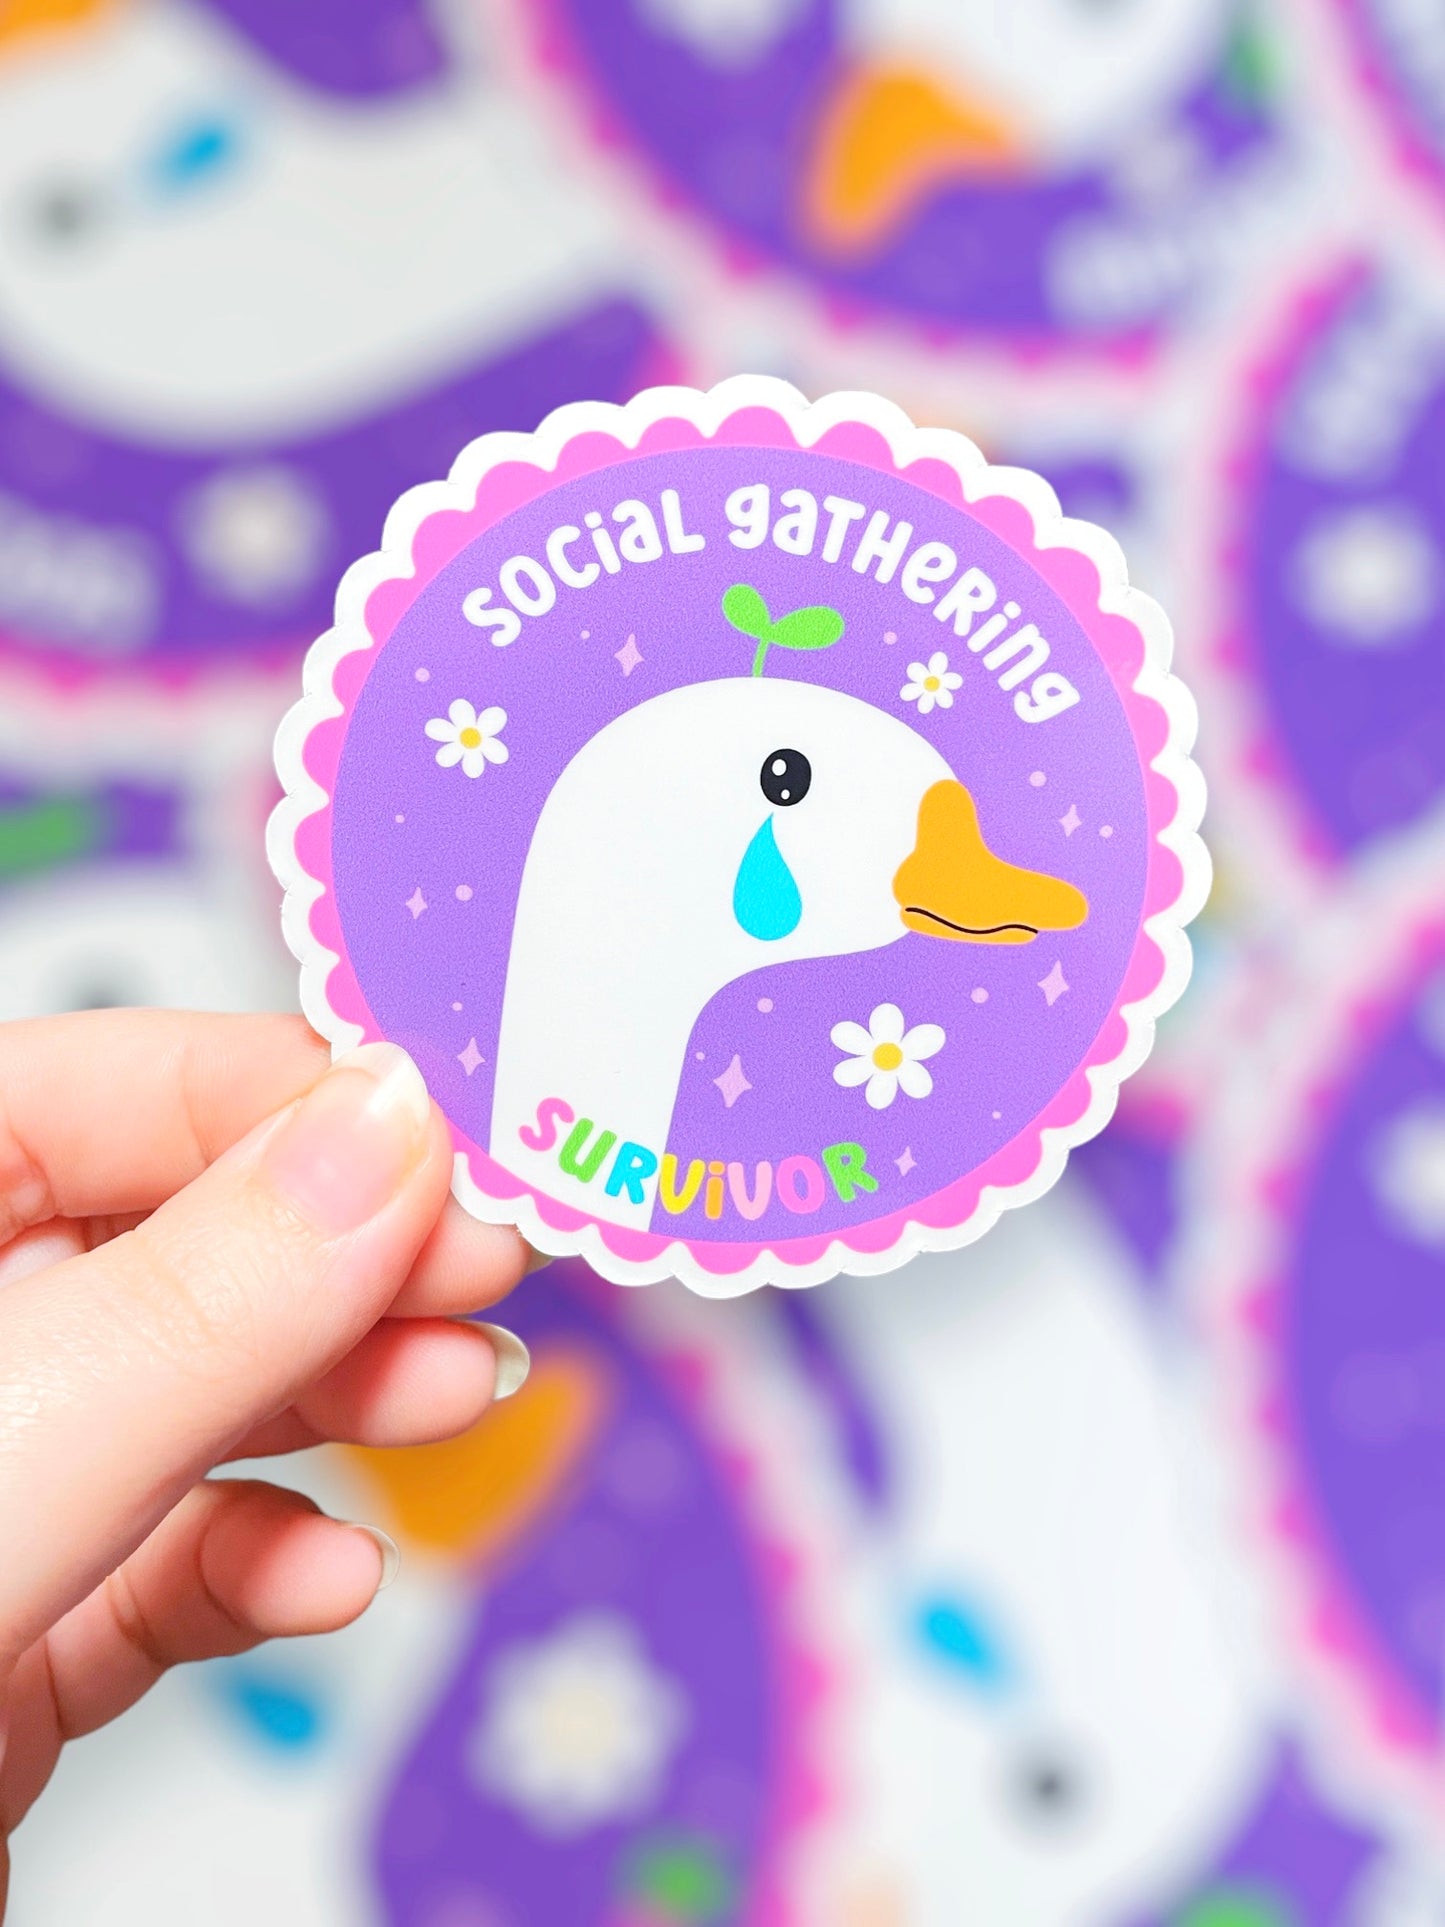 Social Gathering Goose, Vinyl Sticker